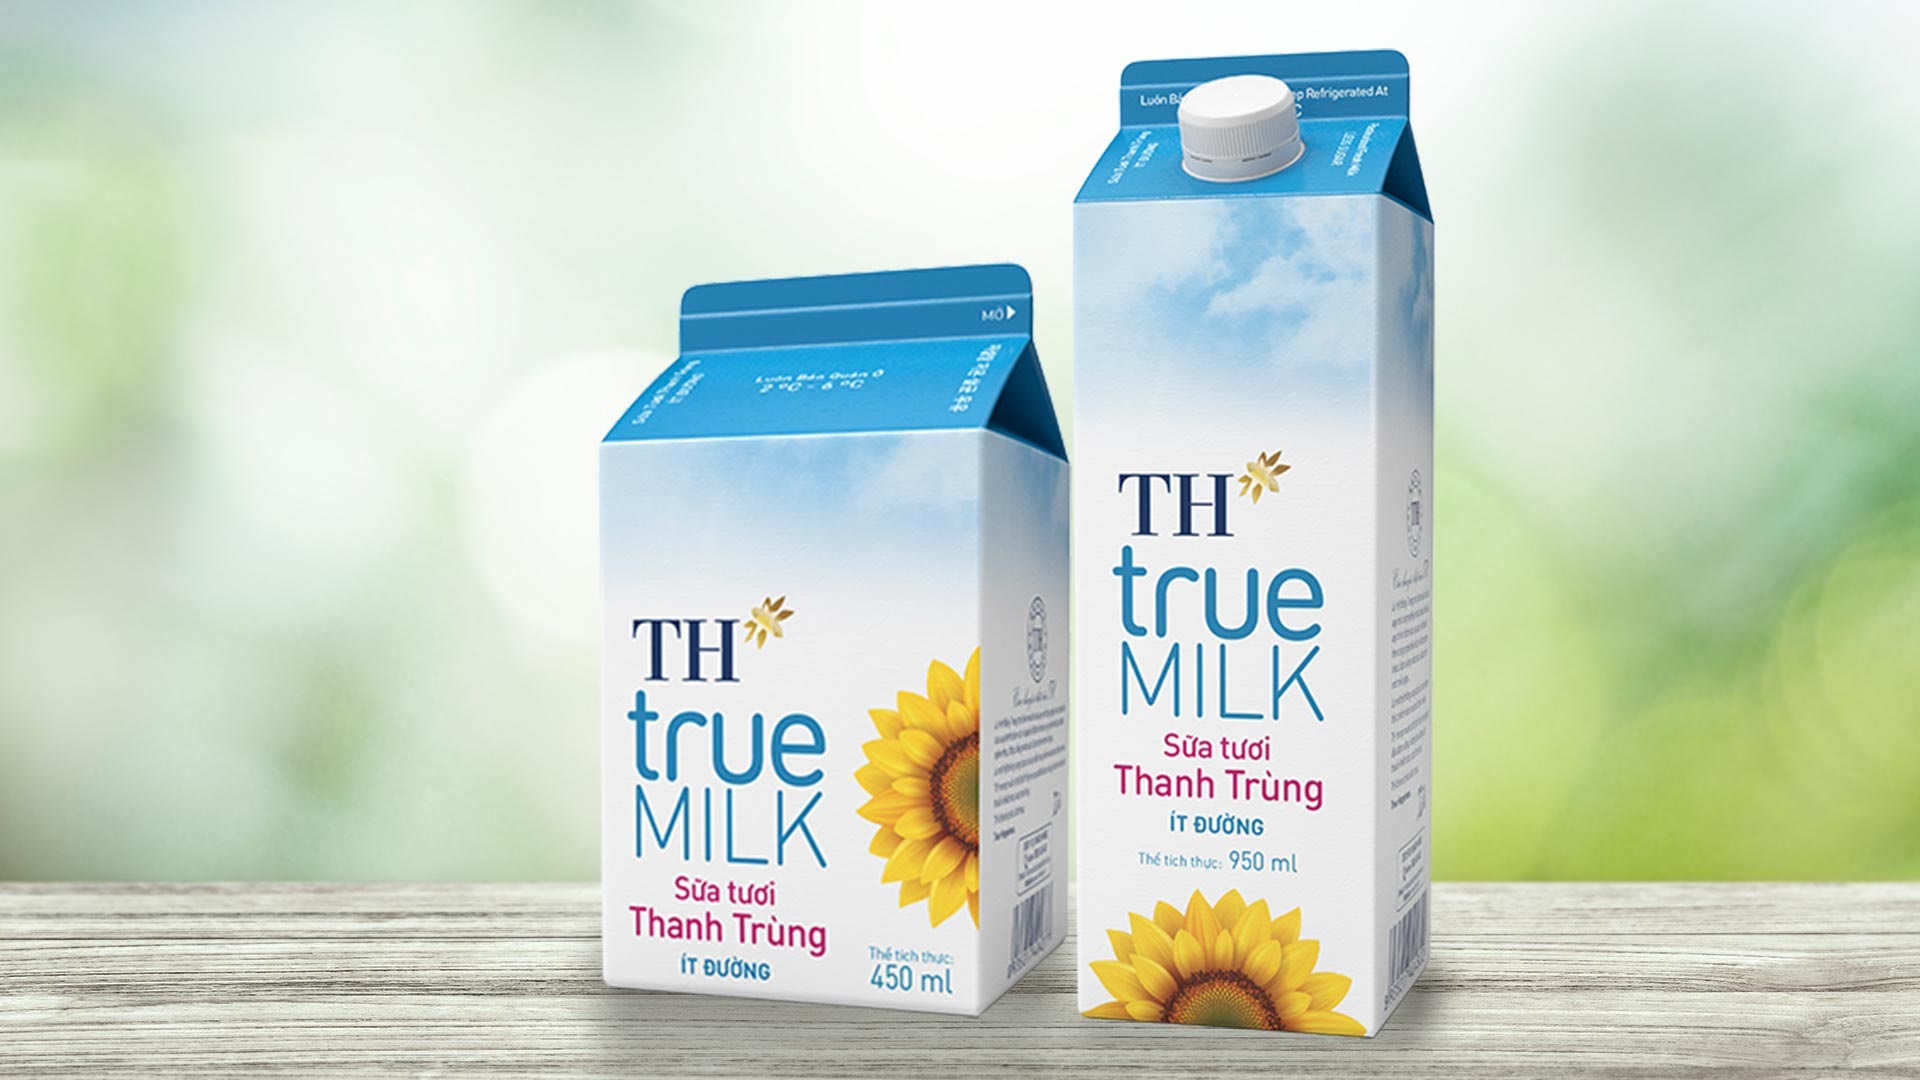 VinID Voucher tung ưu đãi của TH True MILK mua 1 tặng 1 sữa tươi thanh trùng